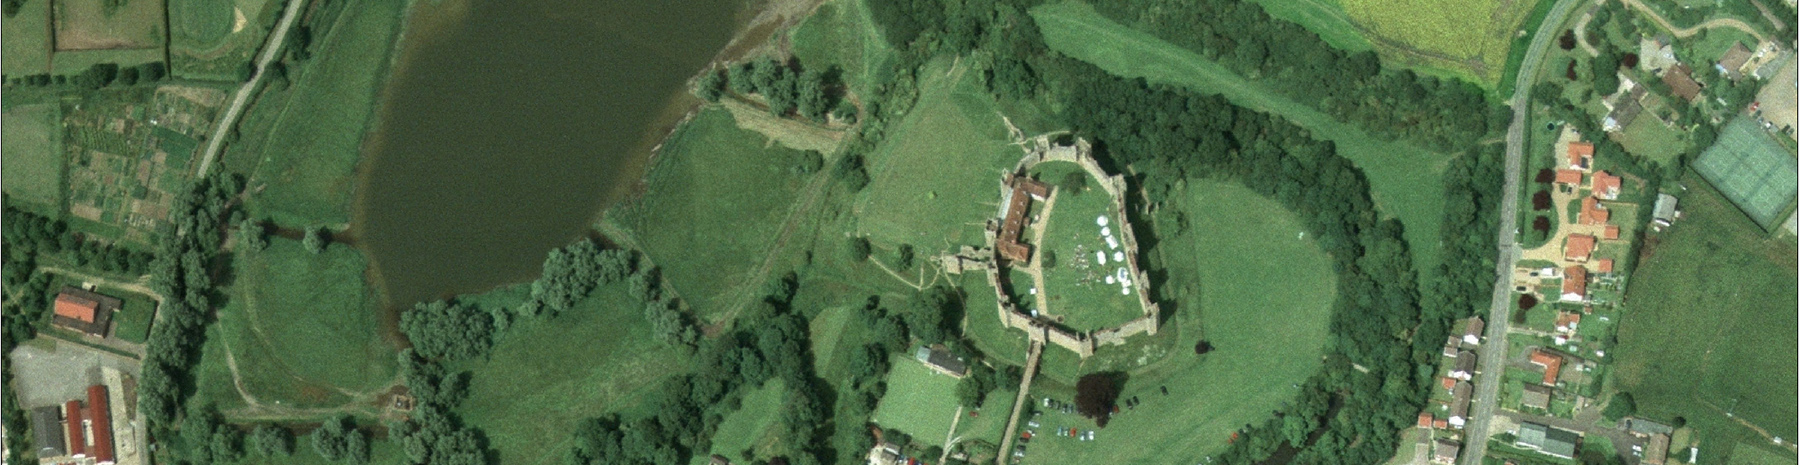 aerial photo of Framlingham Castle and landscape